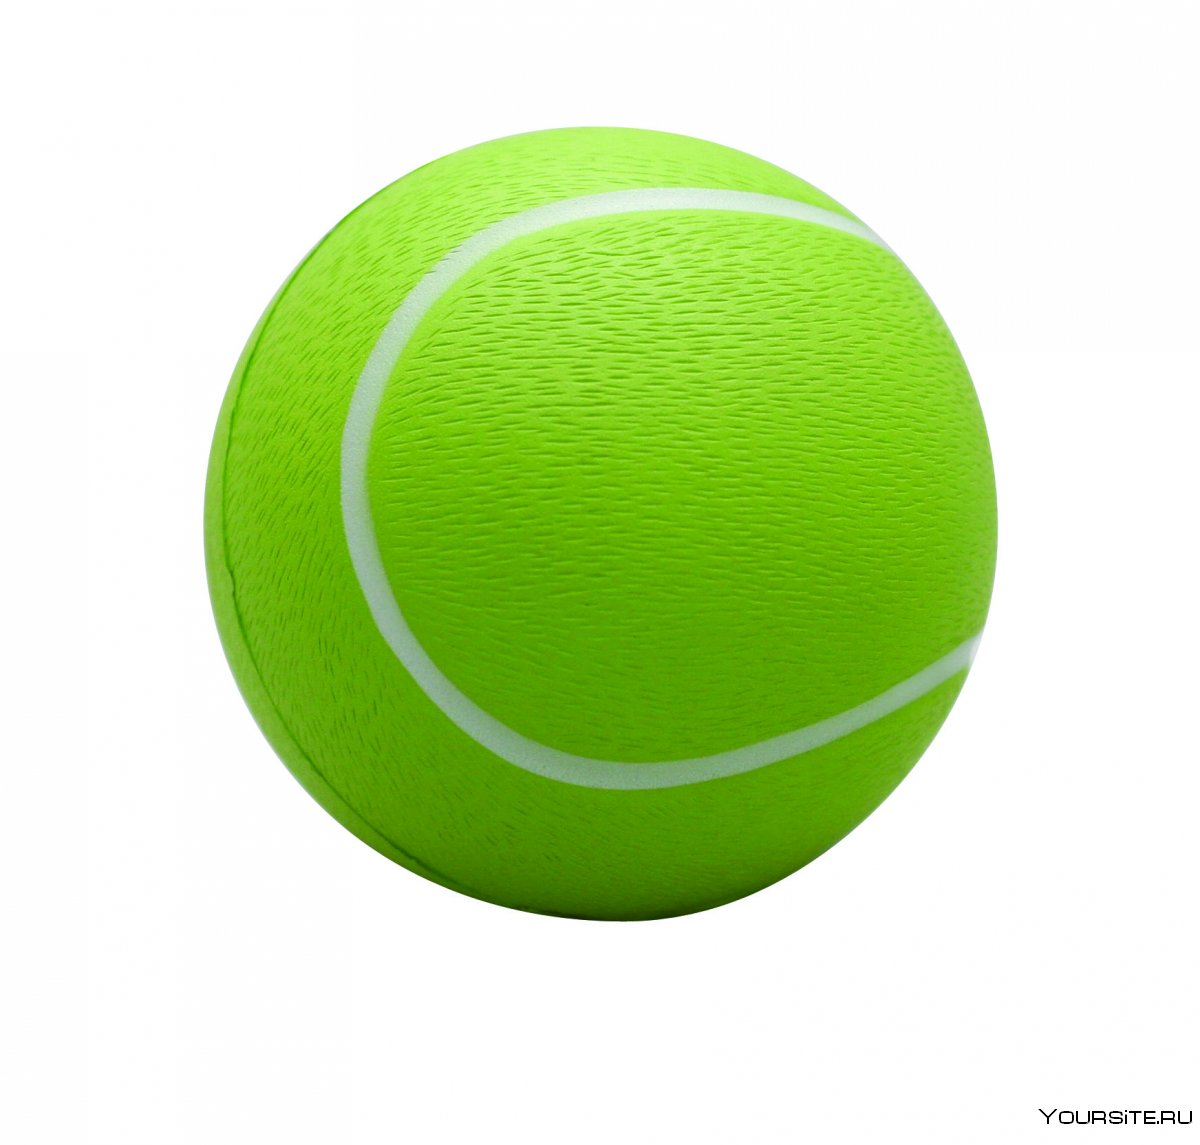 Мяч для тенниса на прозрачном фоне